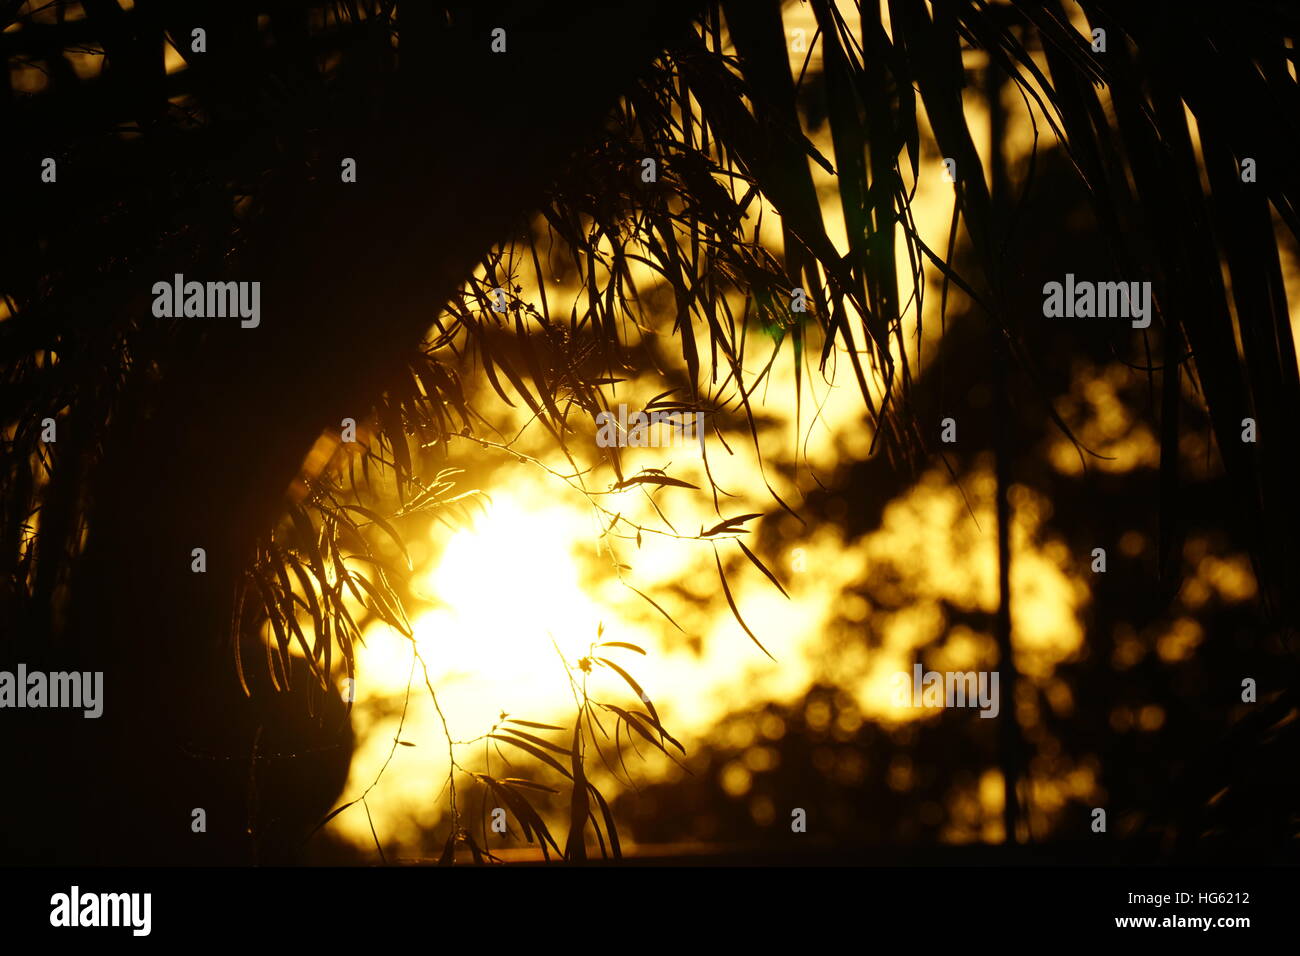 Sonnenuntergang im Hintergrund mit einer Niederlassung im Fokus im Vordergrund. Stockfoto